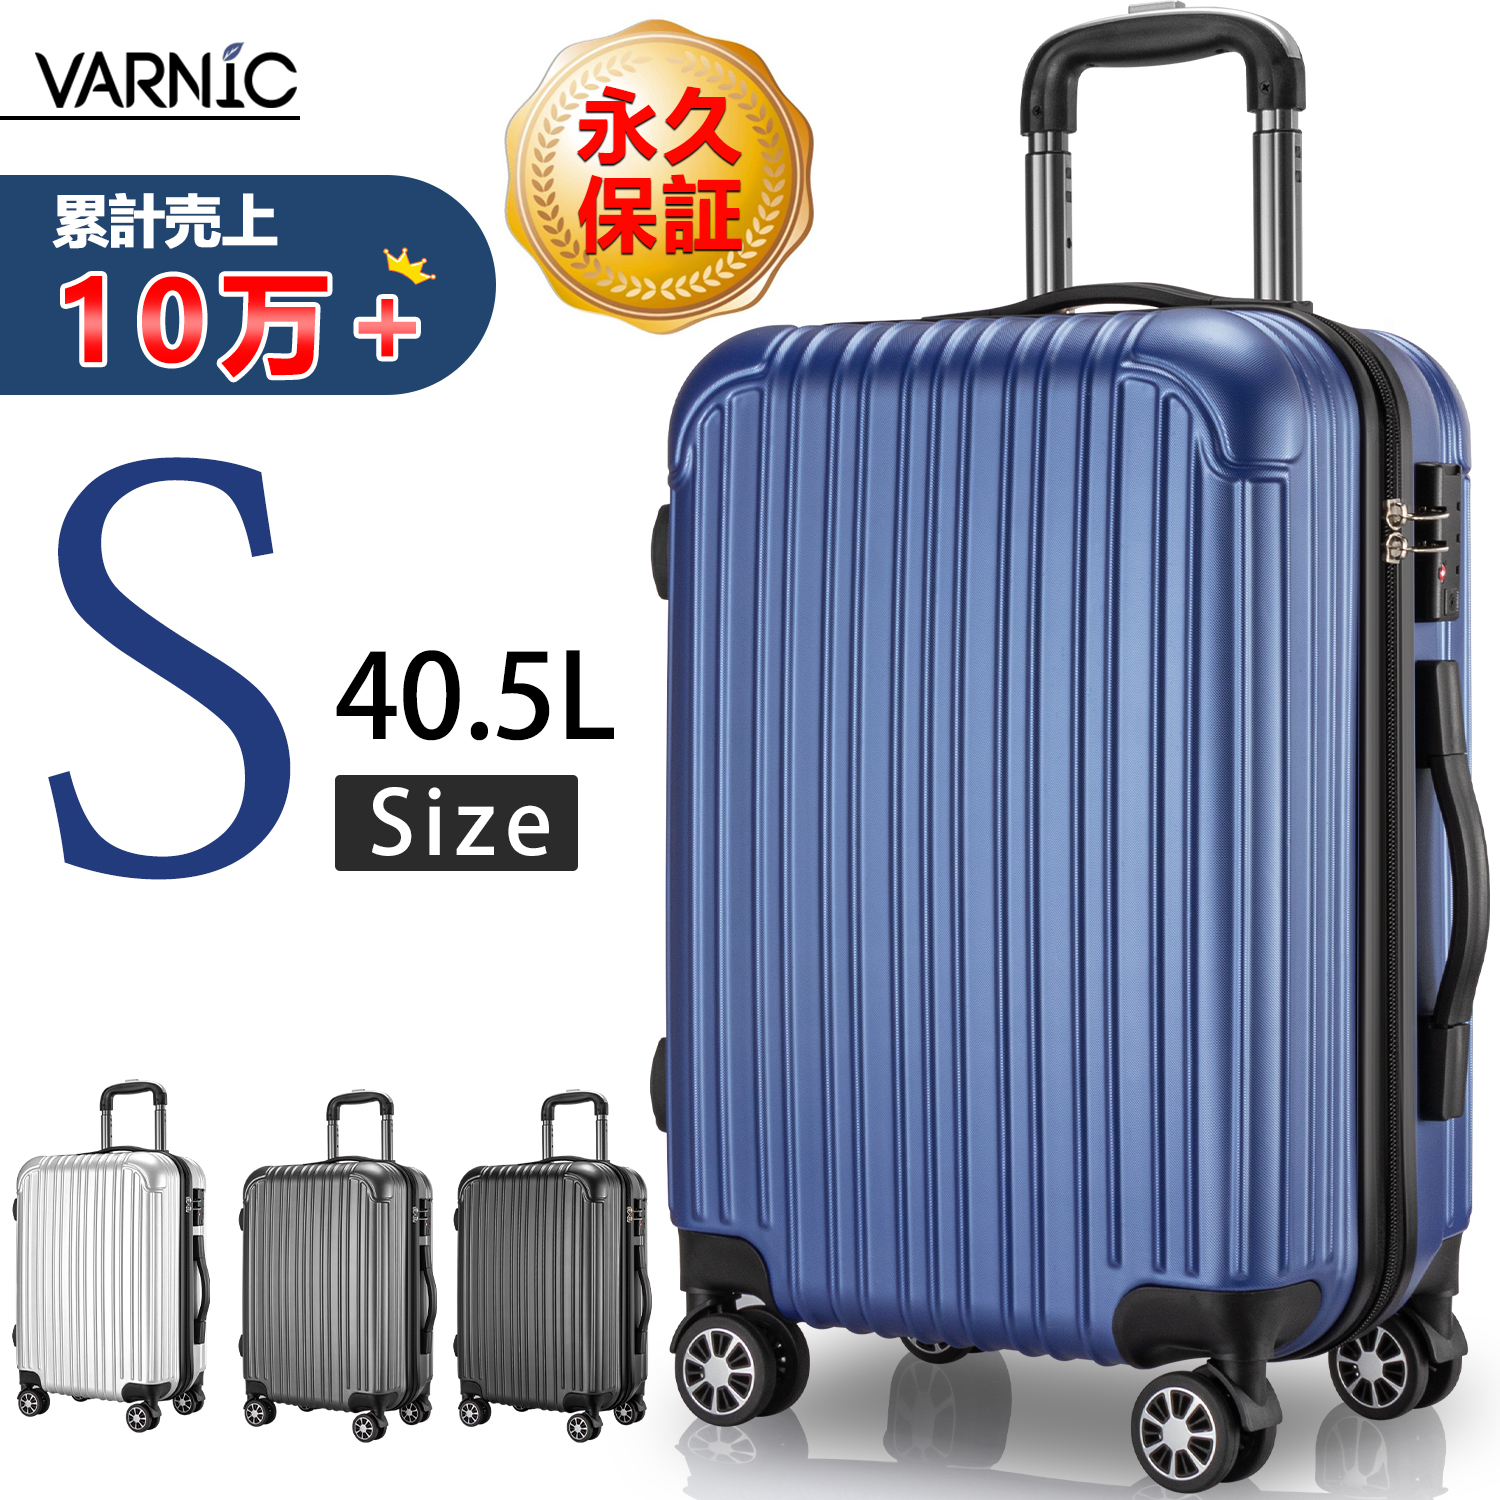 VARNIC スーツケース キャリーバッグ キャリーケース 機内持ち込み ダブルキャスター  360度回転 TSAローク搭載 ファスナー式 ビジネス (S, 40.5L)